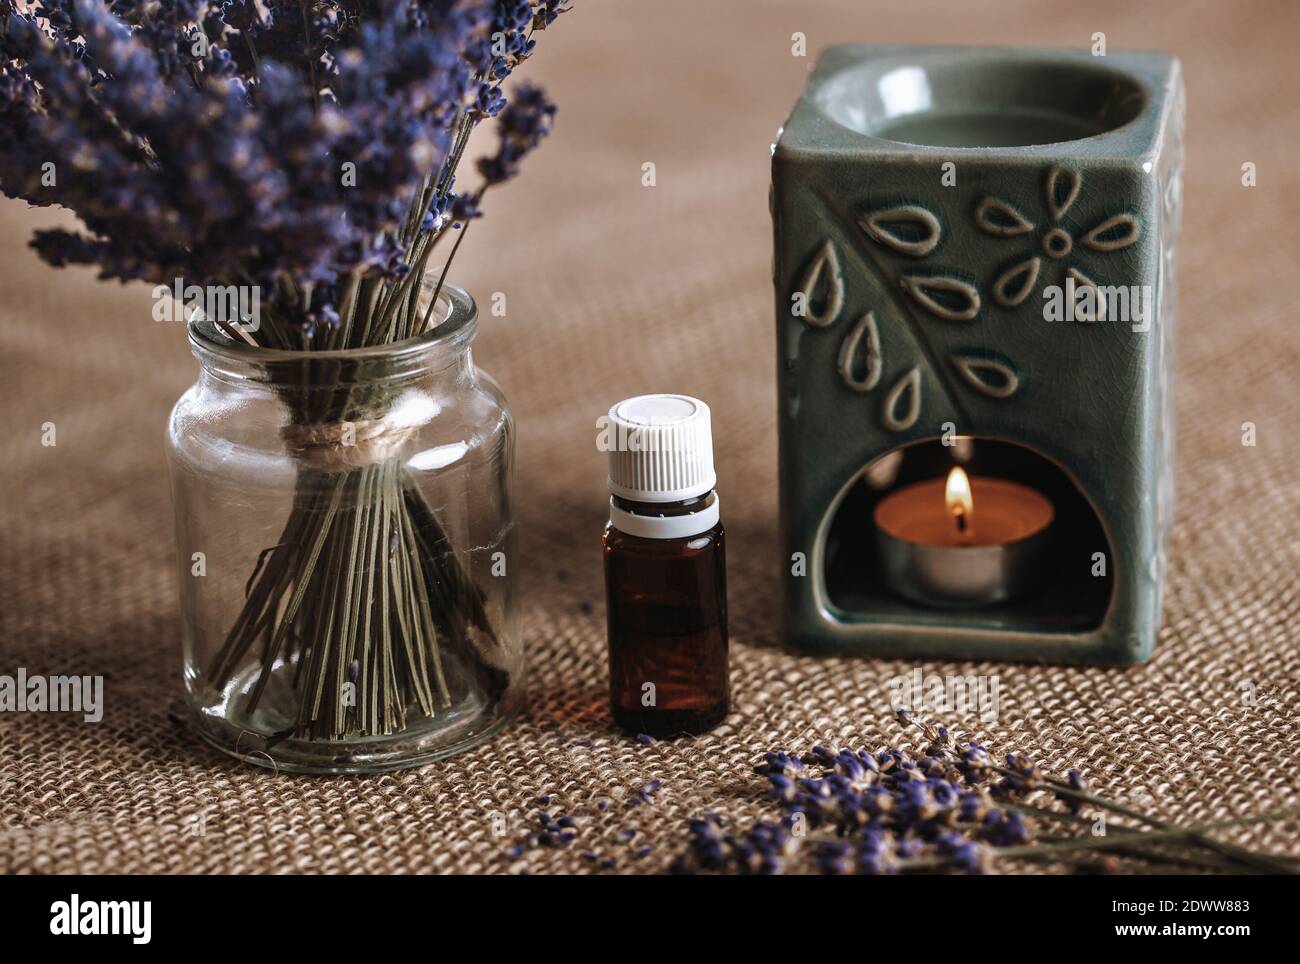 Duftlampe mit einem aromatischen Öl und brennende Kerze mit Eimer Lavendel  im Glas, Aromatherapie-Konzept Stockfotografie - Alamy